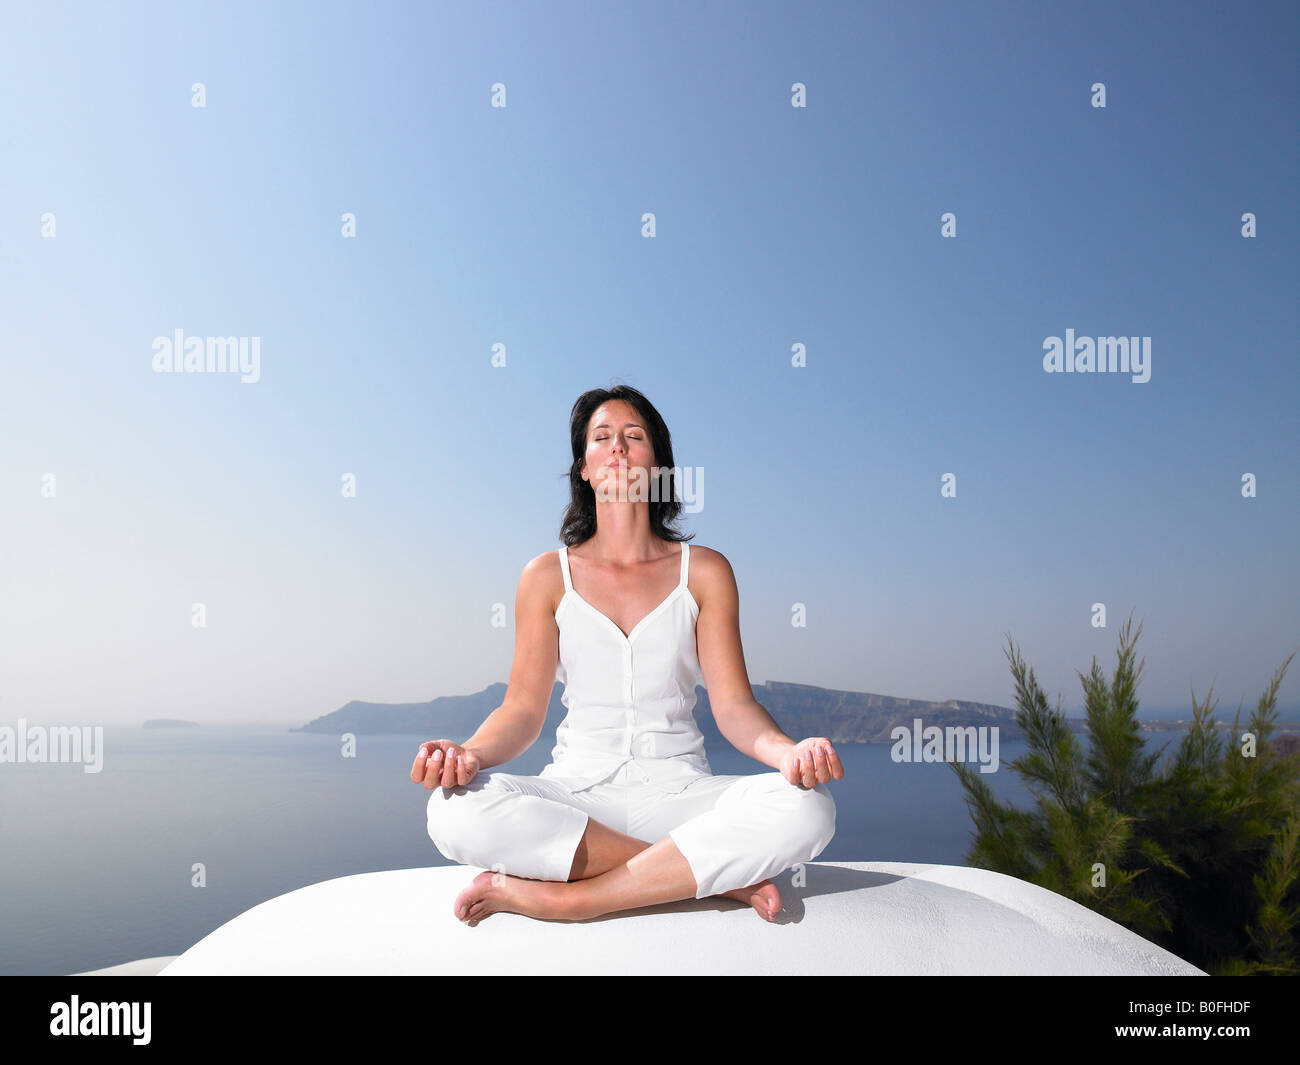 Una mujer en una sesión de yoga Foto de stock